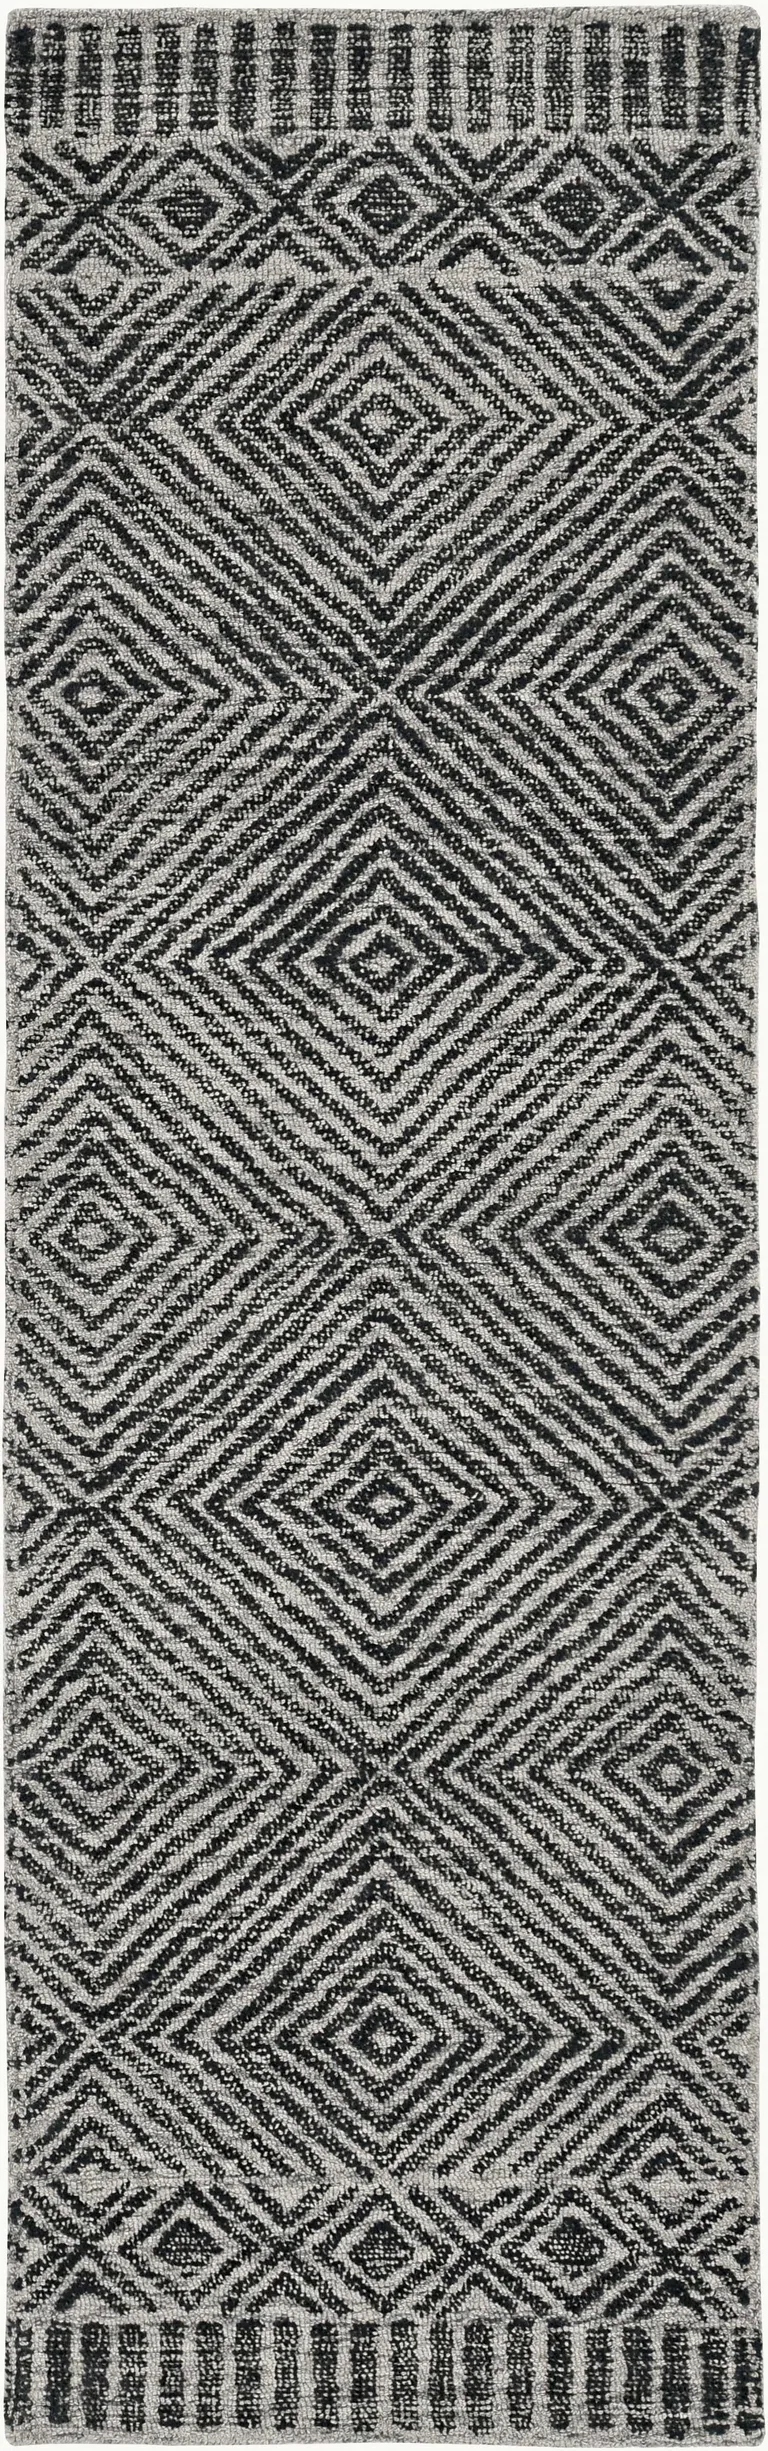 Grey or  Black Wool Rug Photo 1